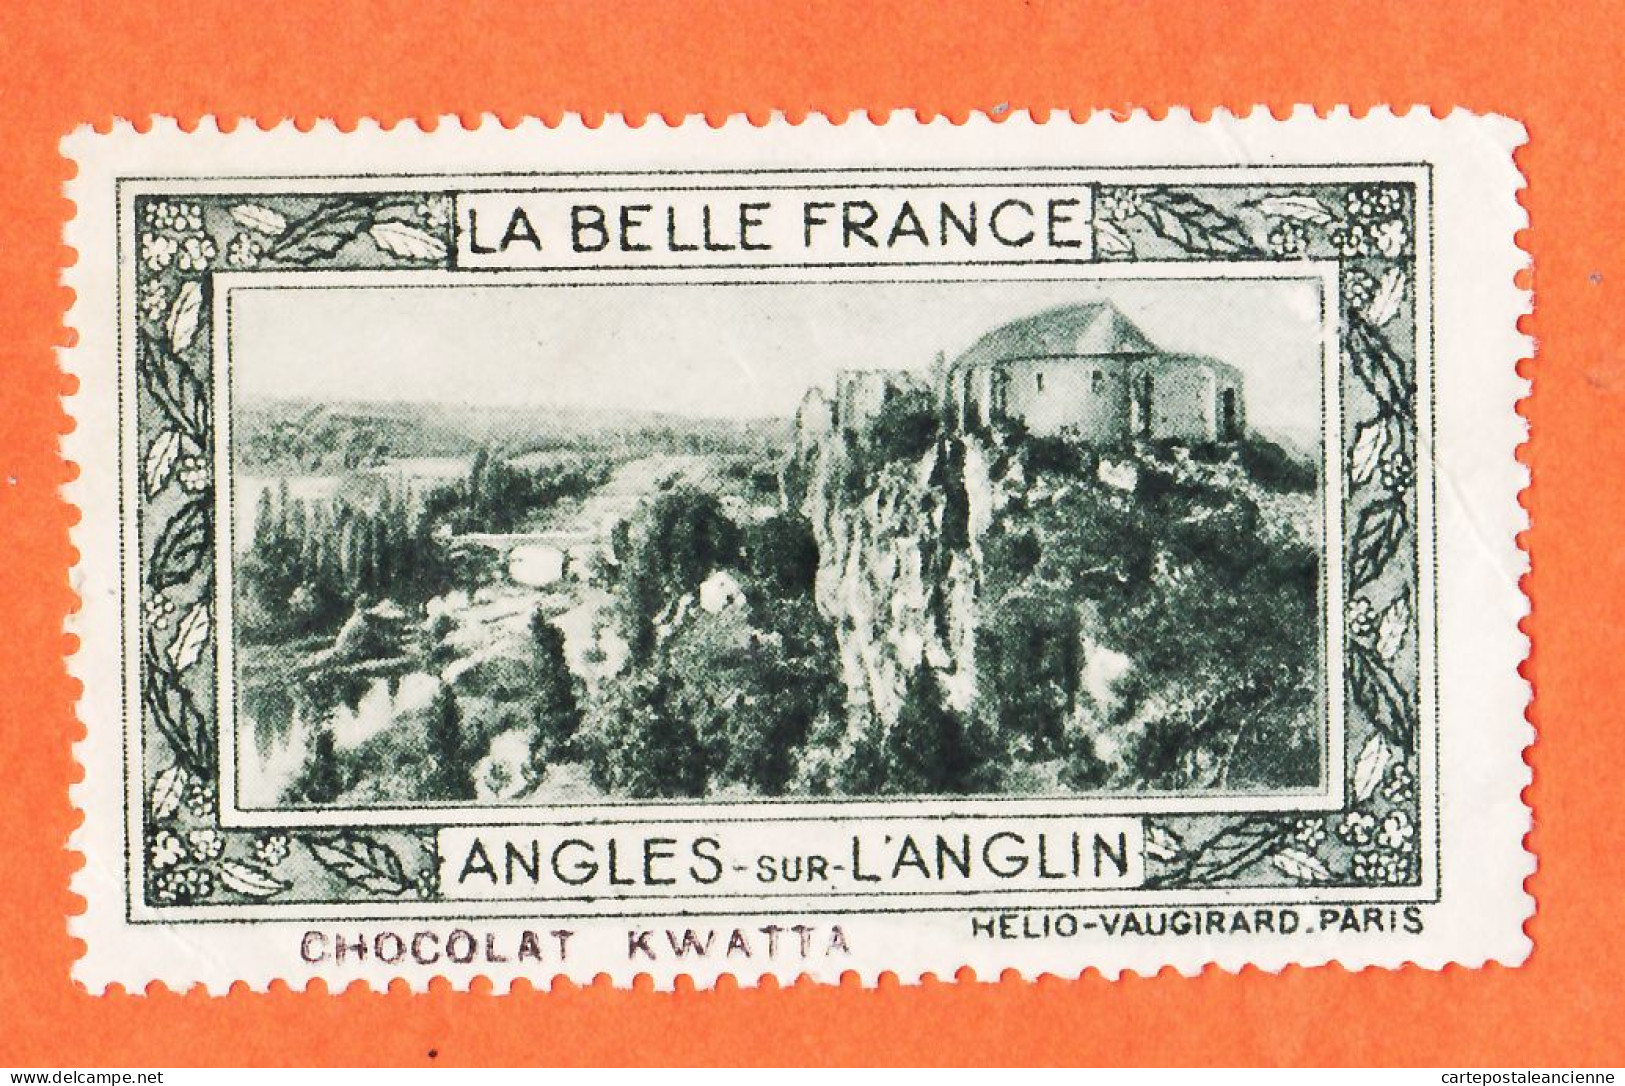 36975 / ⭐ ◉ LANGLES-sur-L'ANGLIN 86-Yonne Pub Chocolat KWATTA Vignette Collection BELLE FRANCE HELIO-VAUGIRARD - Tourisme (Vignettes)